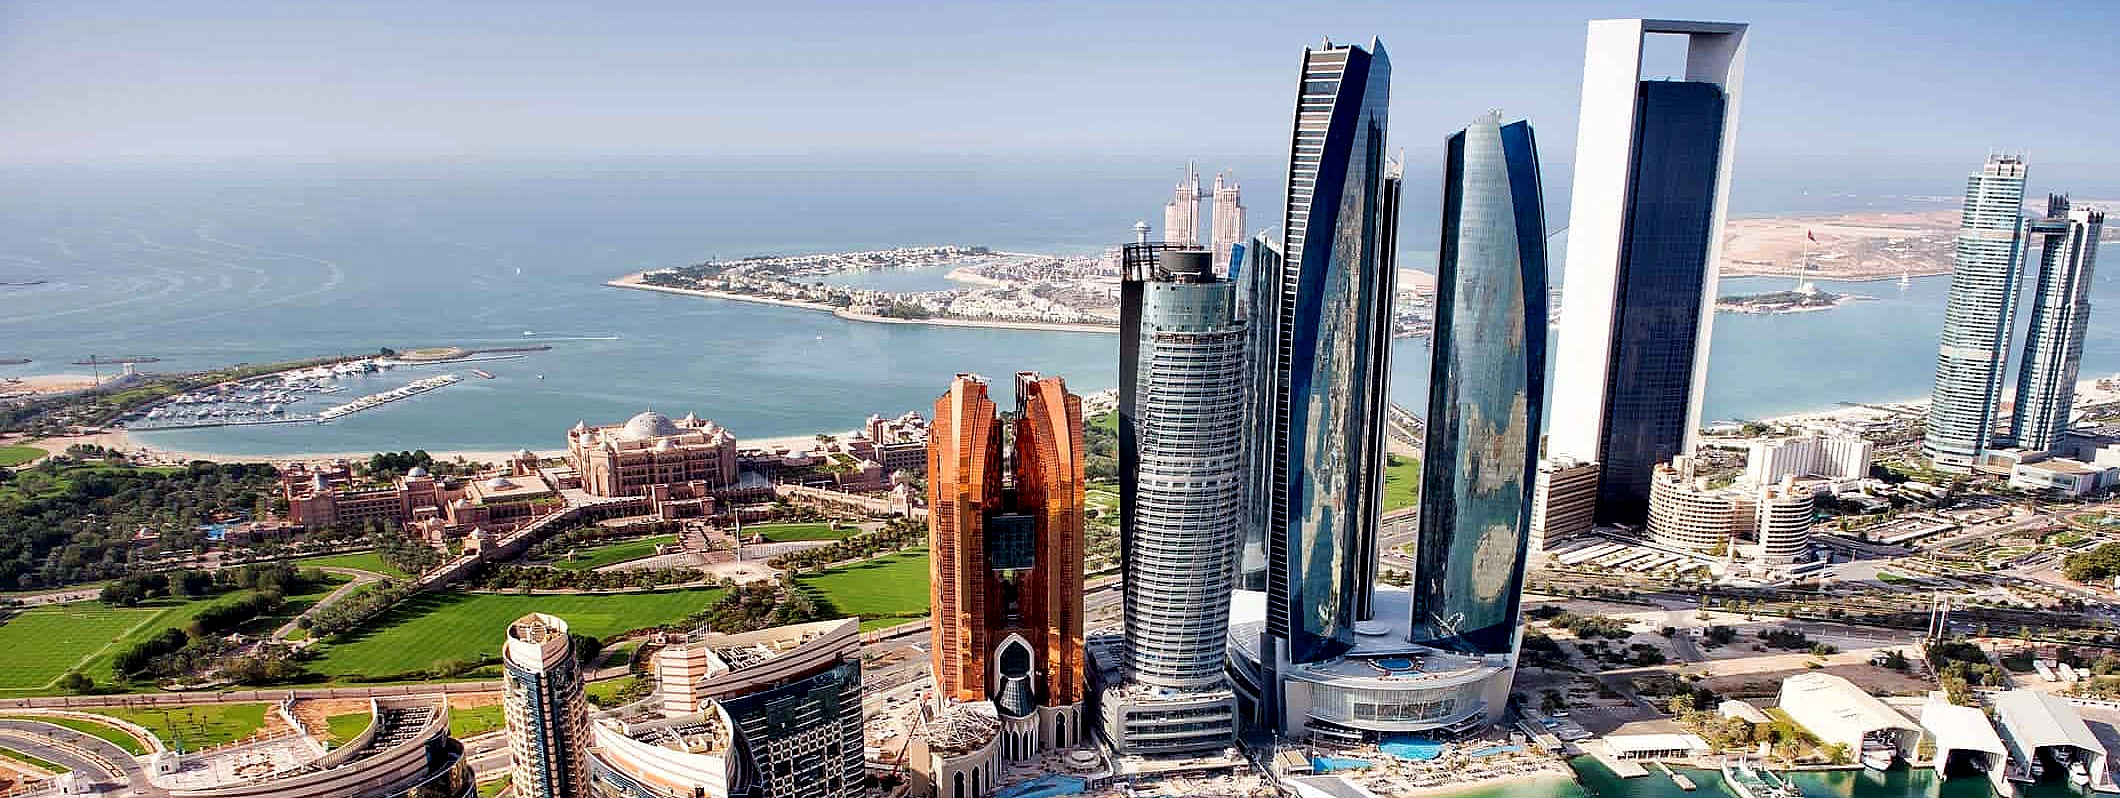 Emirati Arabi, investire no tax in un’economia “veloce”. Giovedì a Verona incontro informativo con le imprese